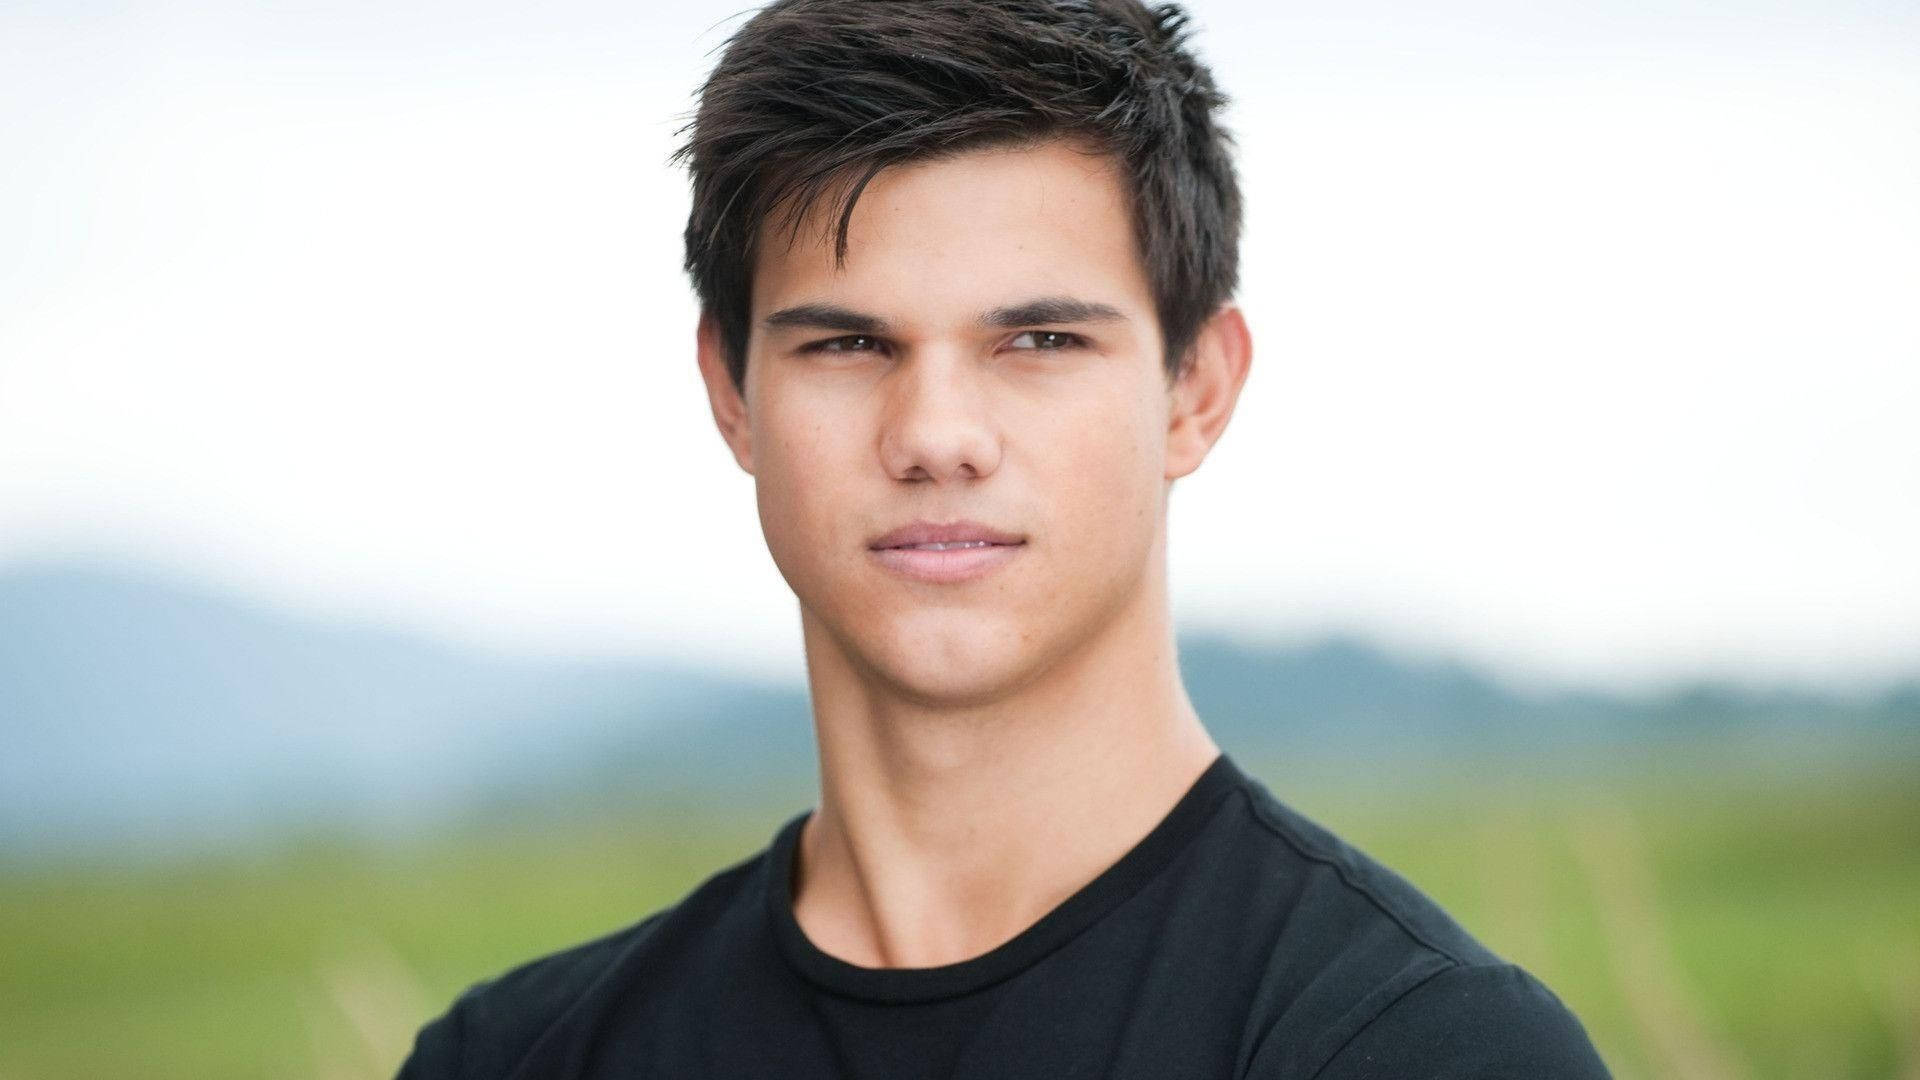 Ansprechenderschauspieler Taylor Lautner Wallpaper